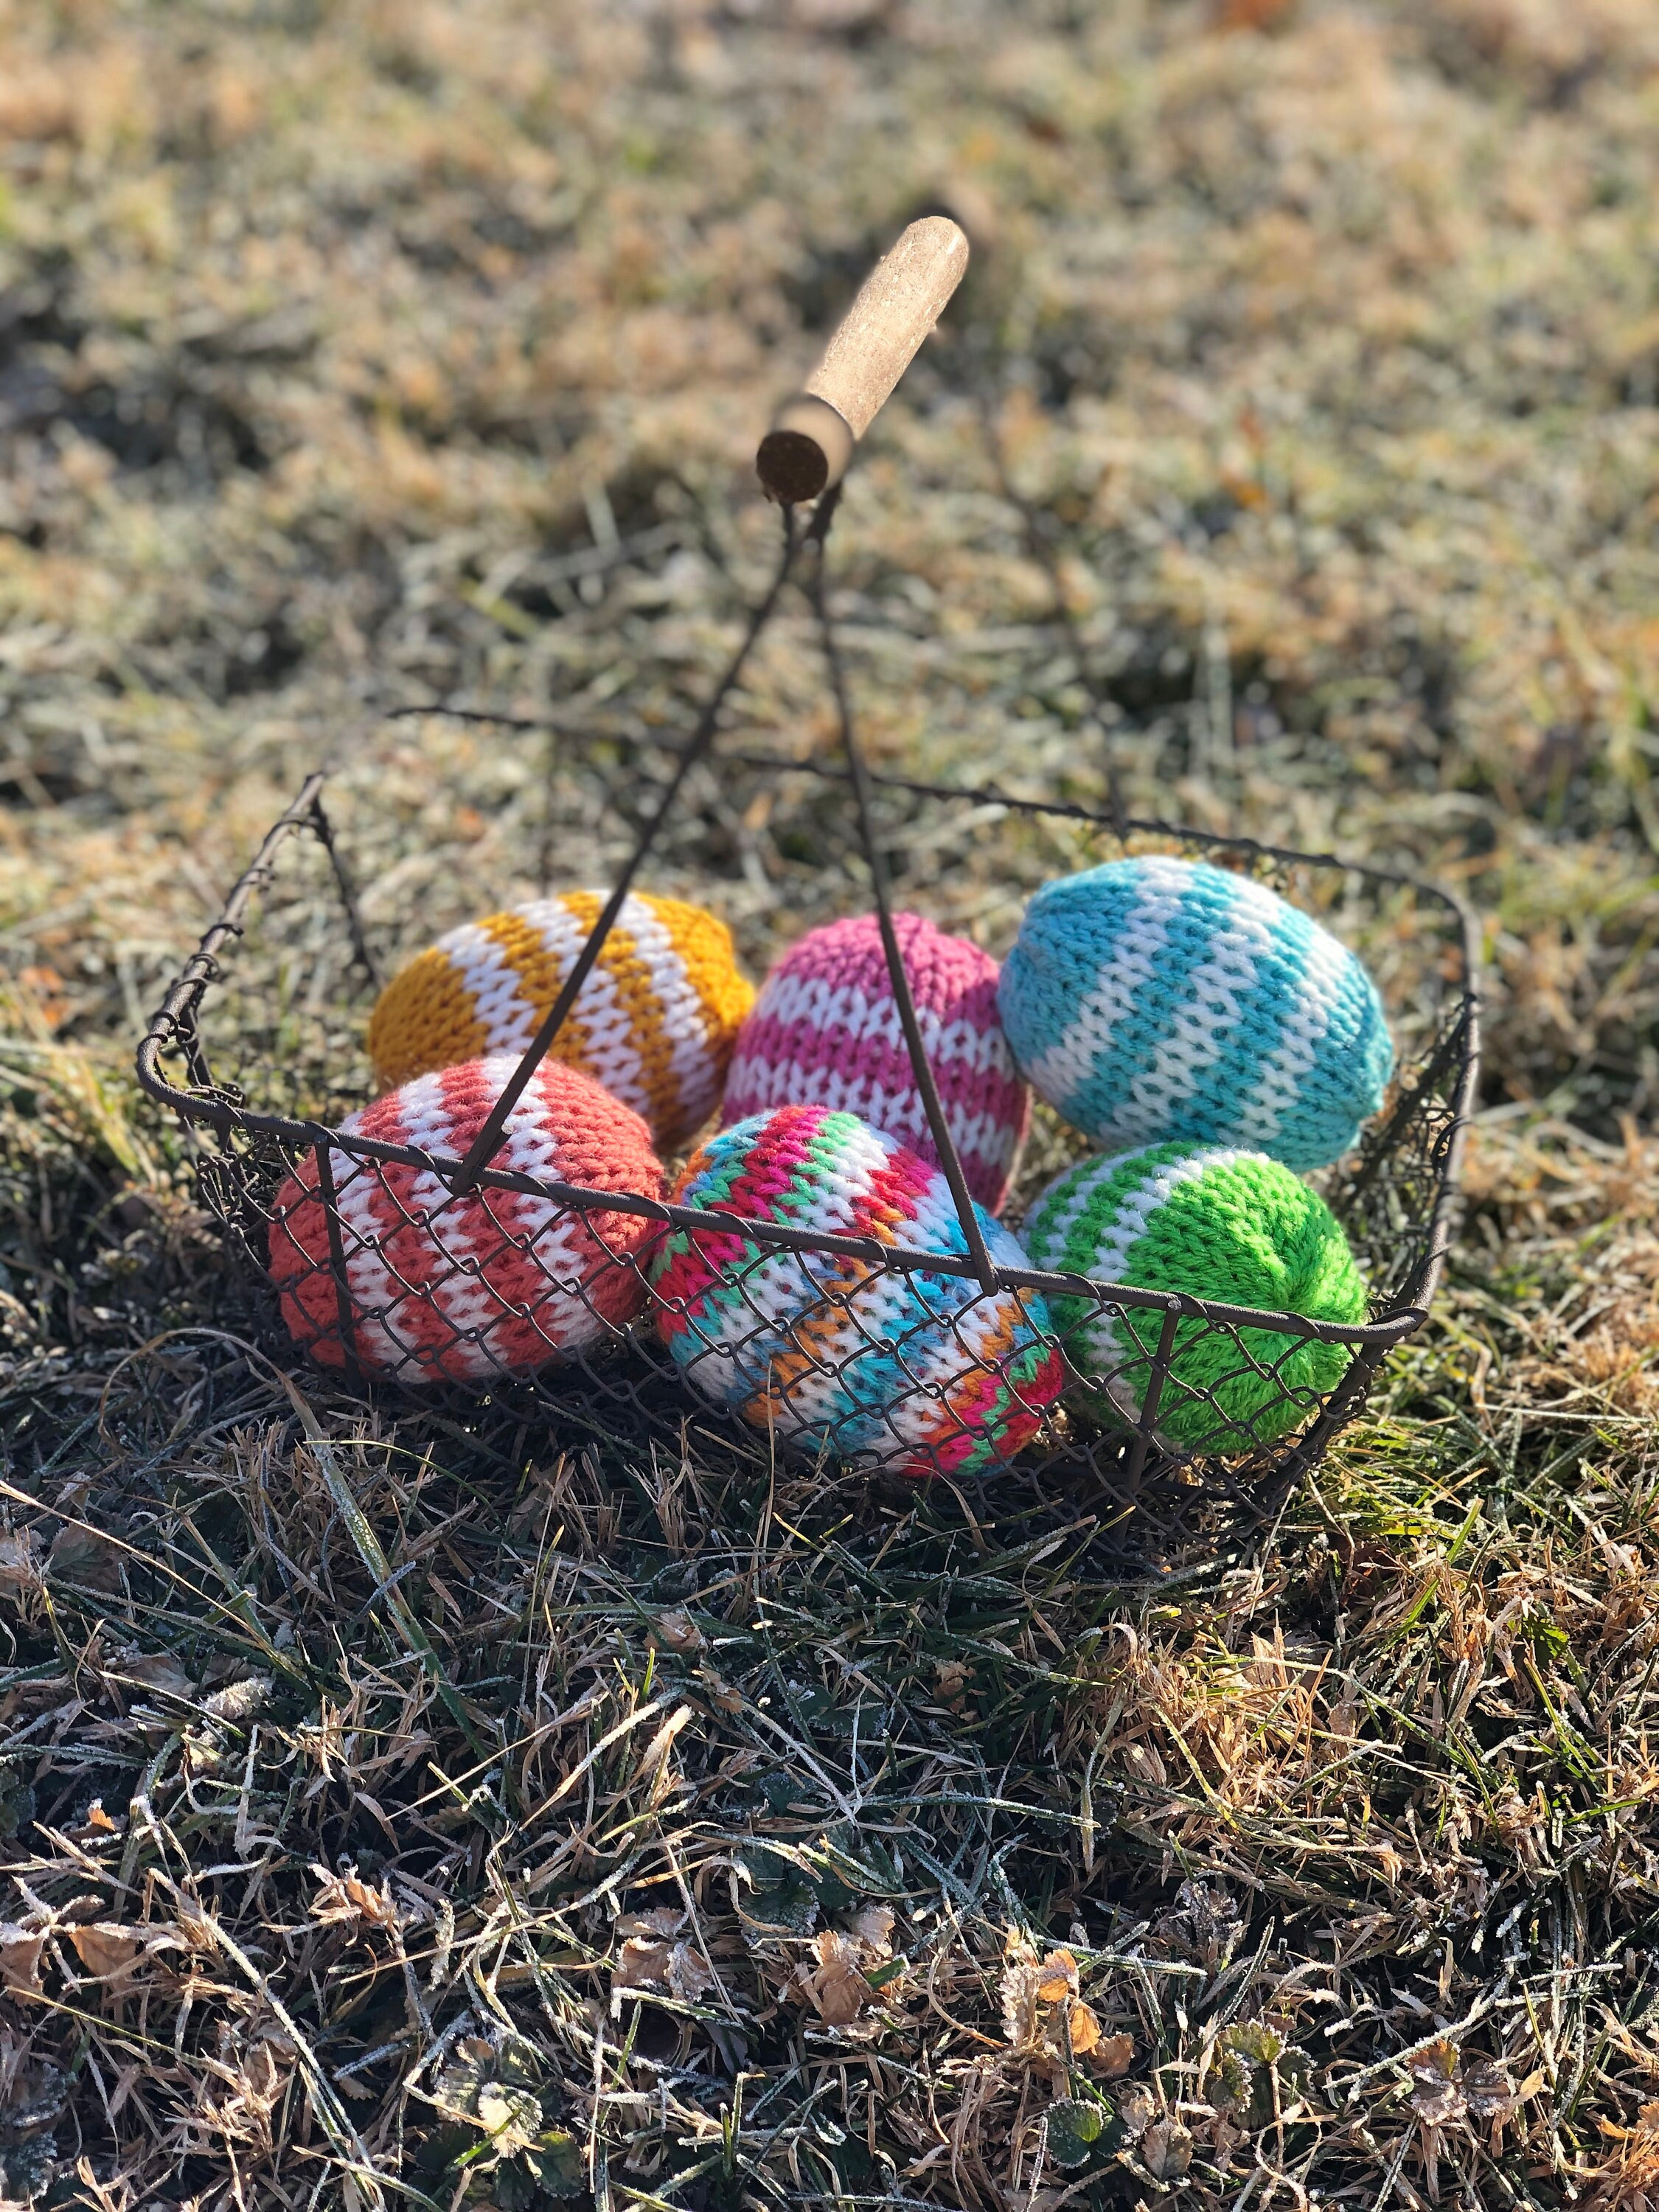 addi Egg Knitting Machine – EcoFriendlyCrafts